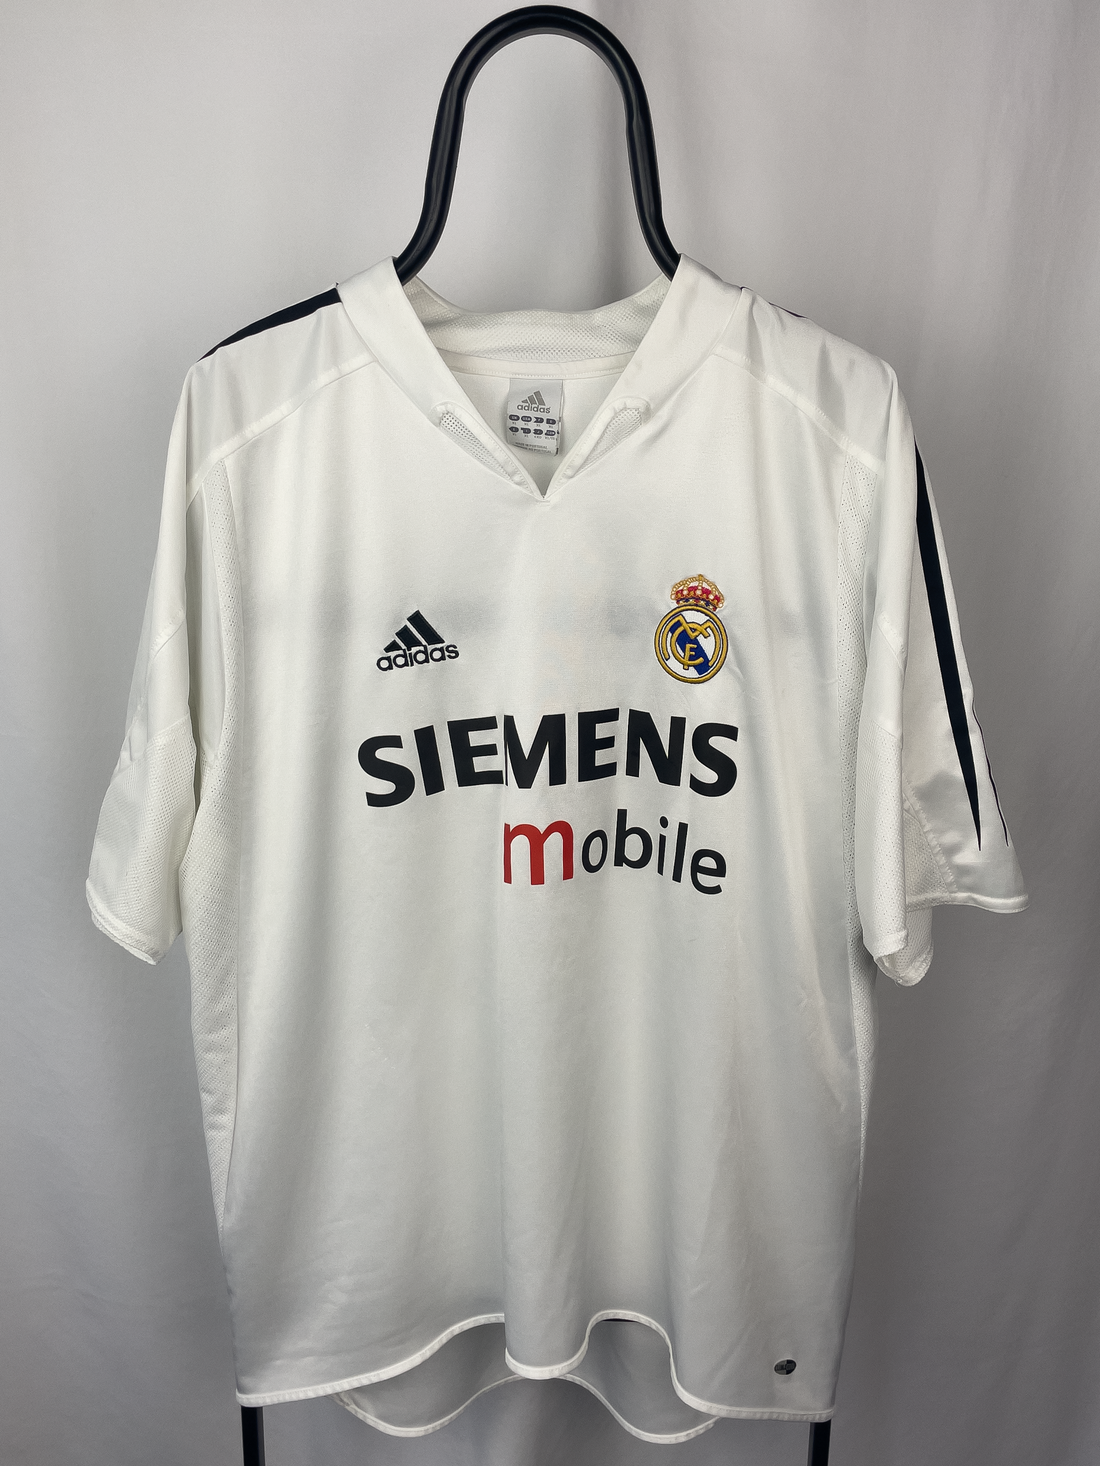 Thomas Gravesen Real Madrid 04/05 hjemmebane trøje - XL